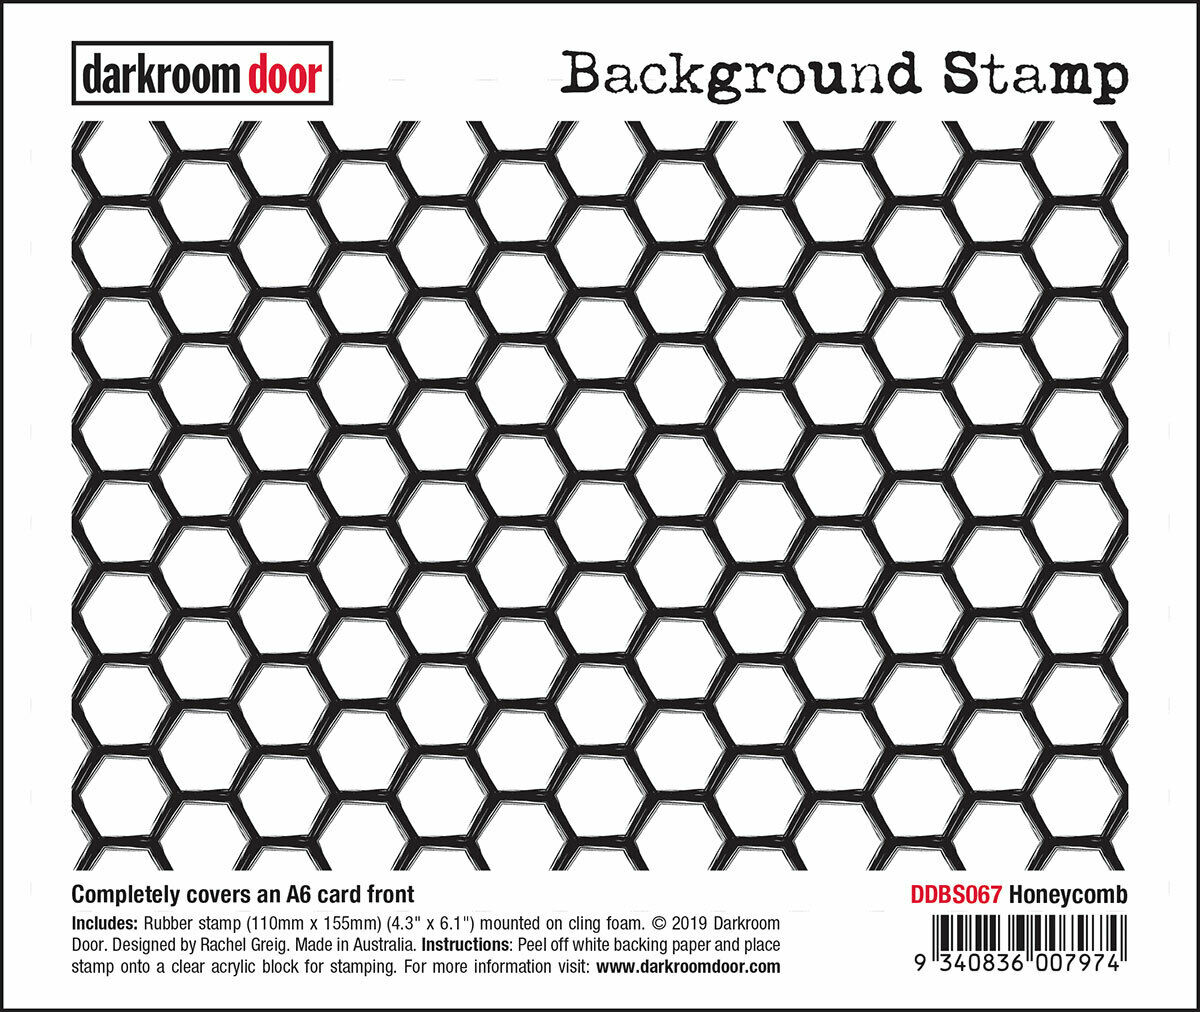 Darkroom Door Background Rubber Stamp Honeycomb 110 x 155mm